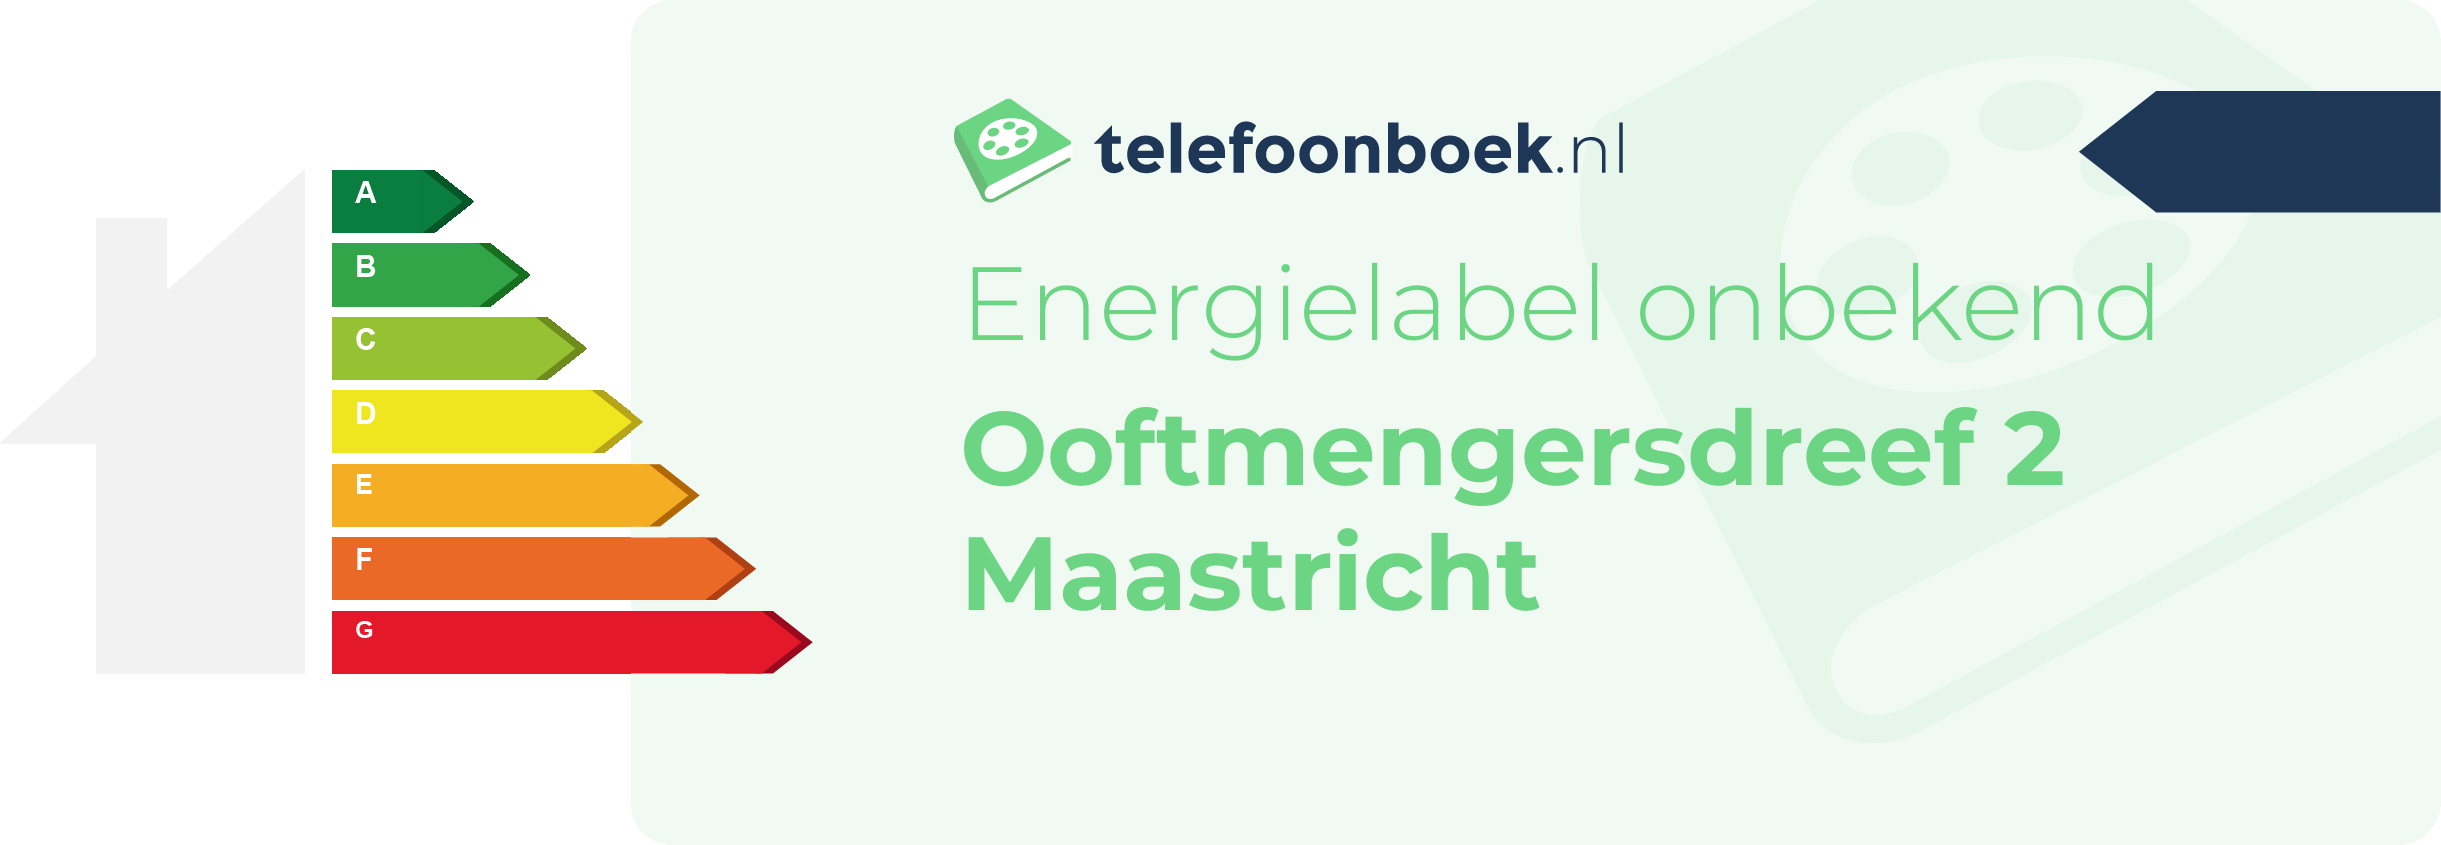 Energielabel Ooftmengersdreef 2 Maastricht